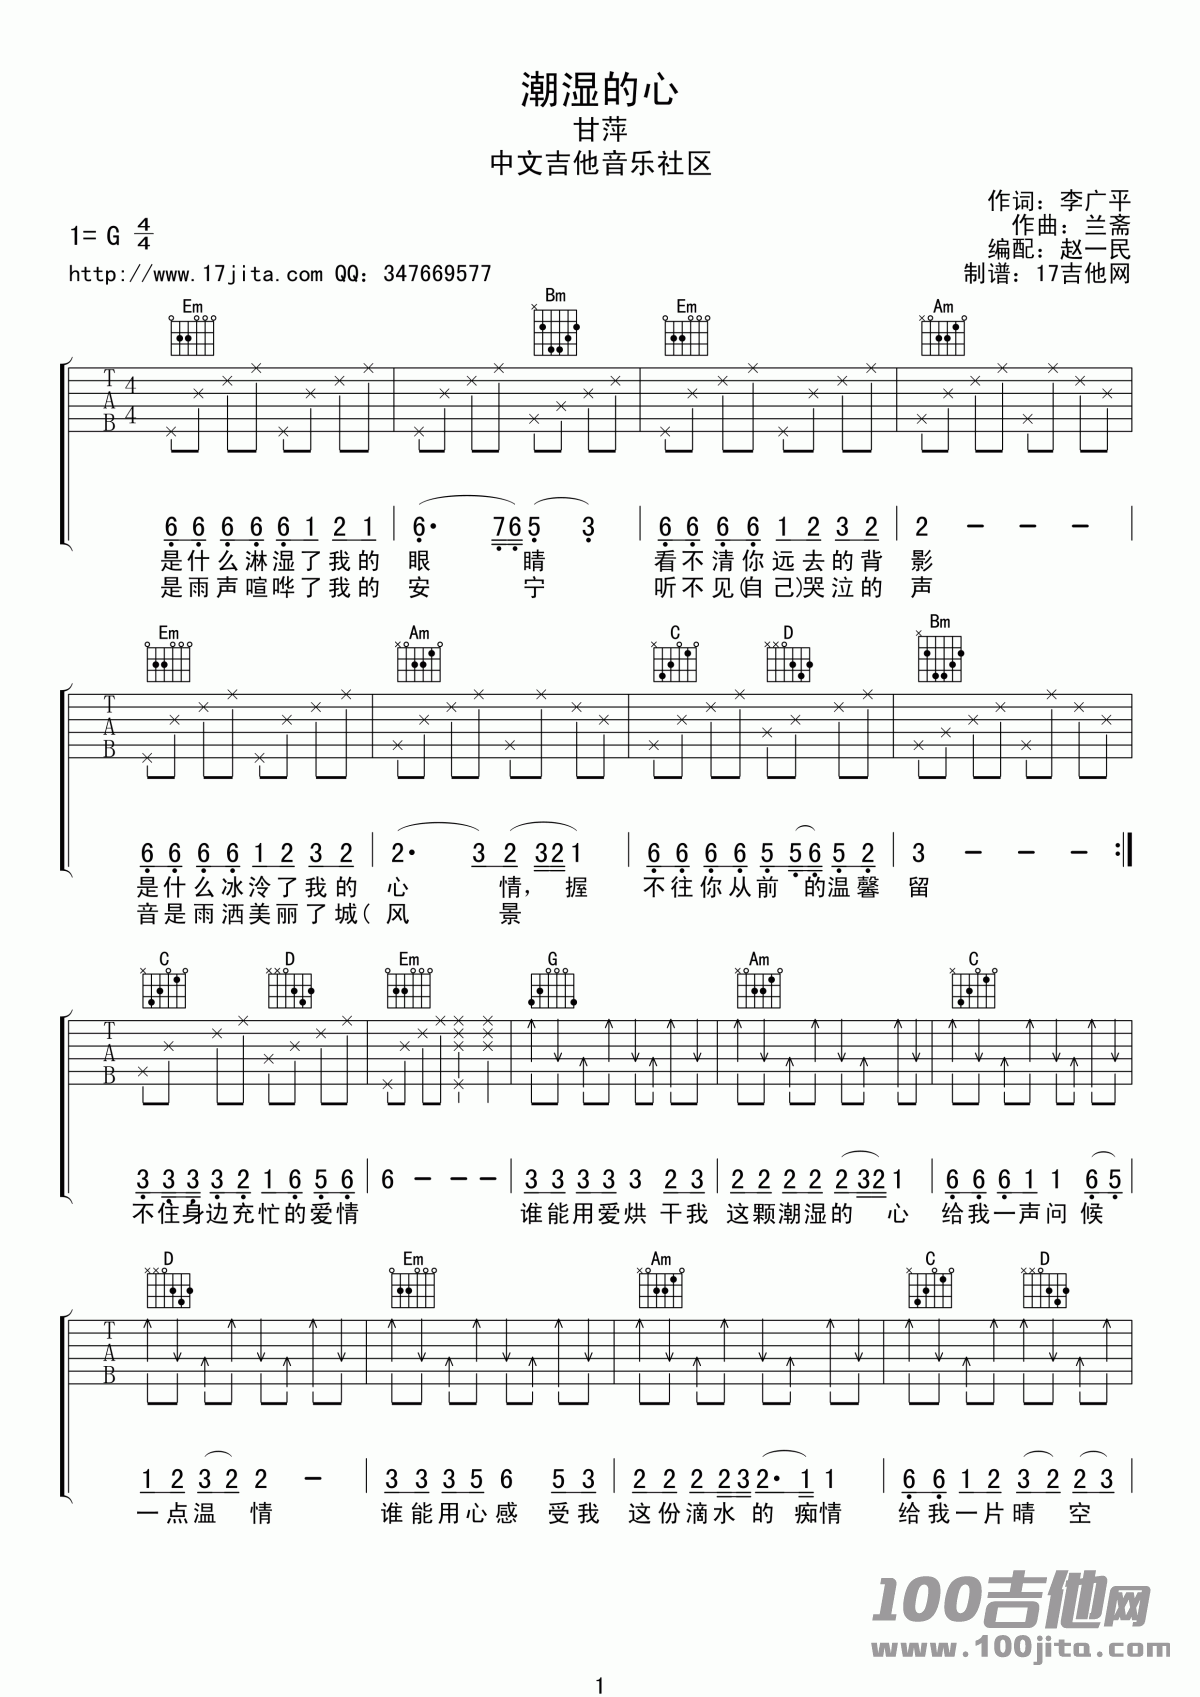 湿润的心吉他谱是依据歌手甘萍的一首经典老歌编配的吉他谱,吉他谱